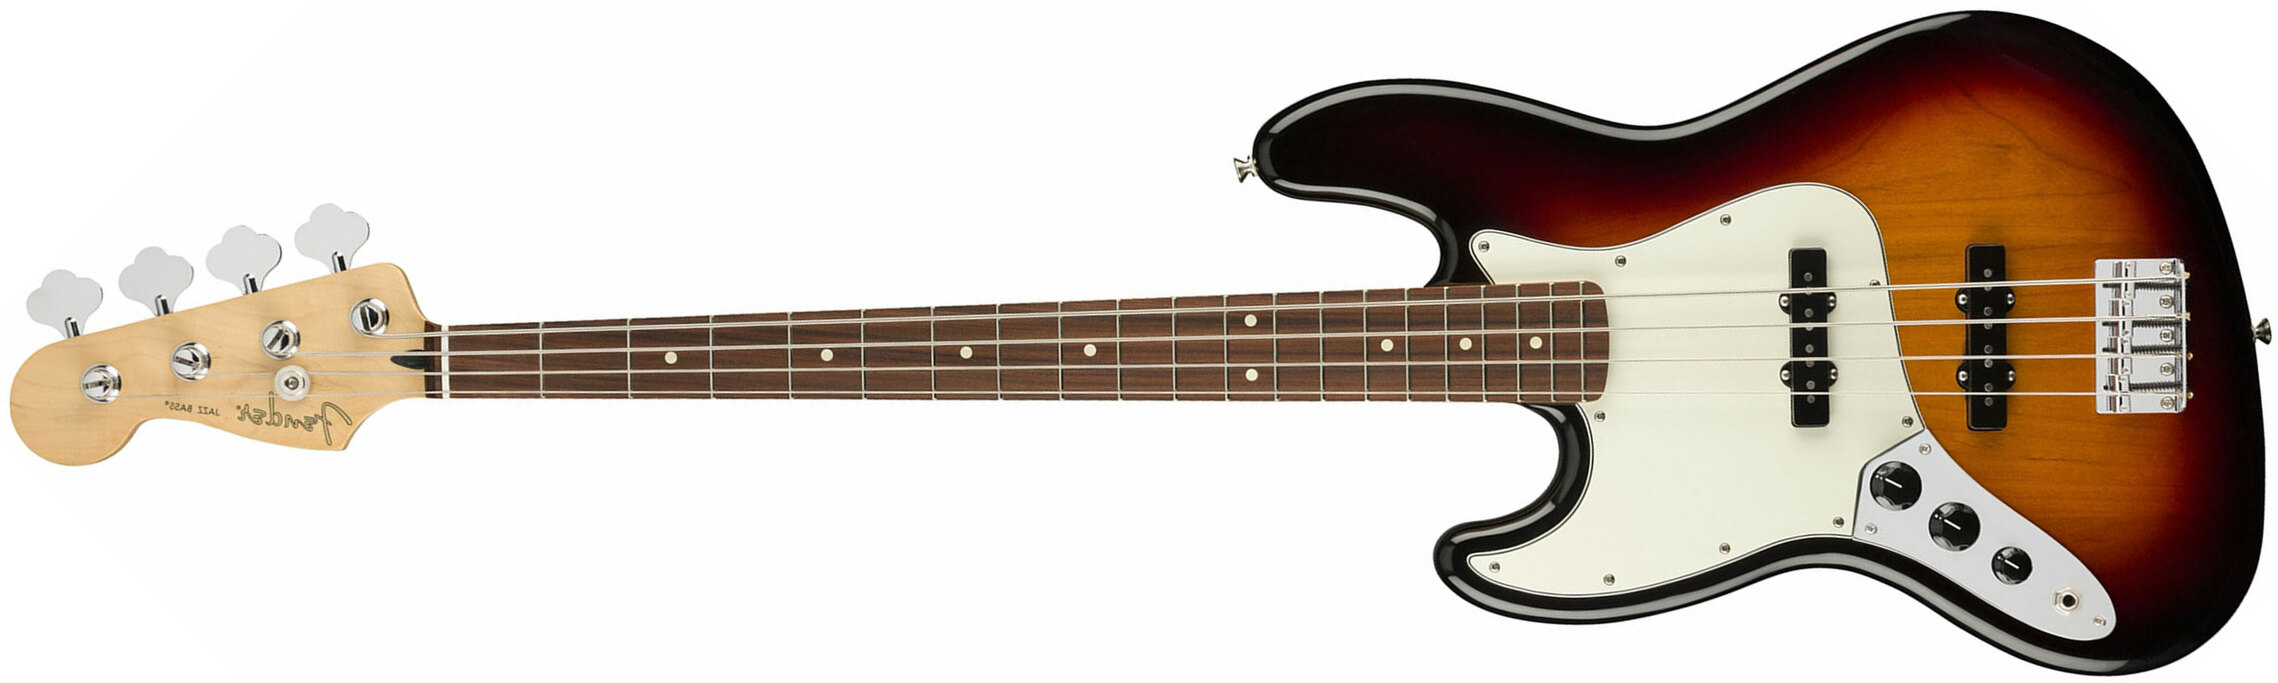 Fender Jazz Bass Player Lh Gaucher Mex Pf - 3-color Sunburst - Bajo eléctrico de cuerpo sólido - Main picture